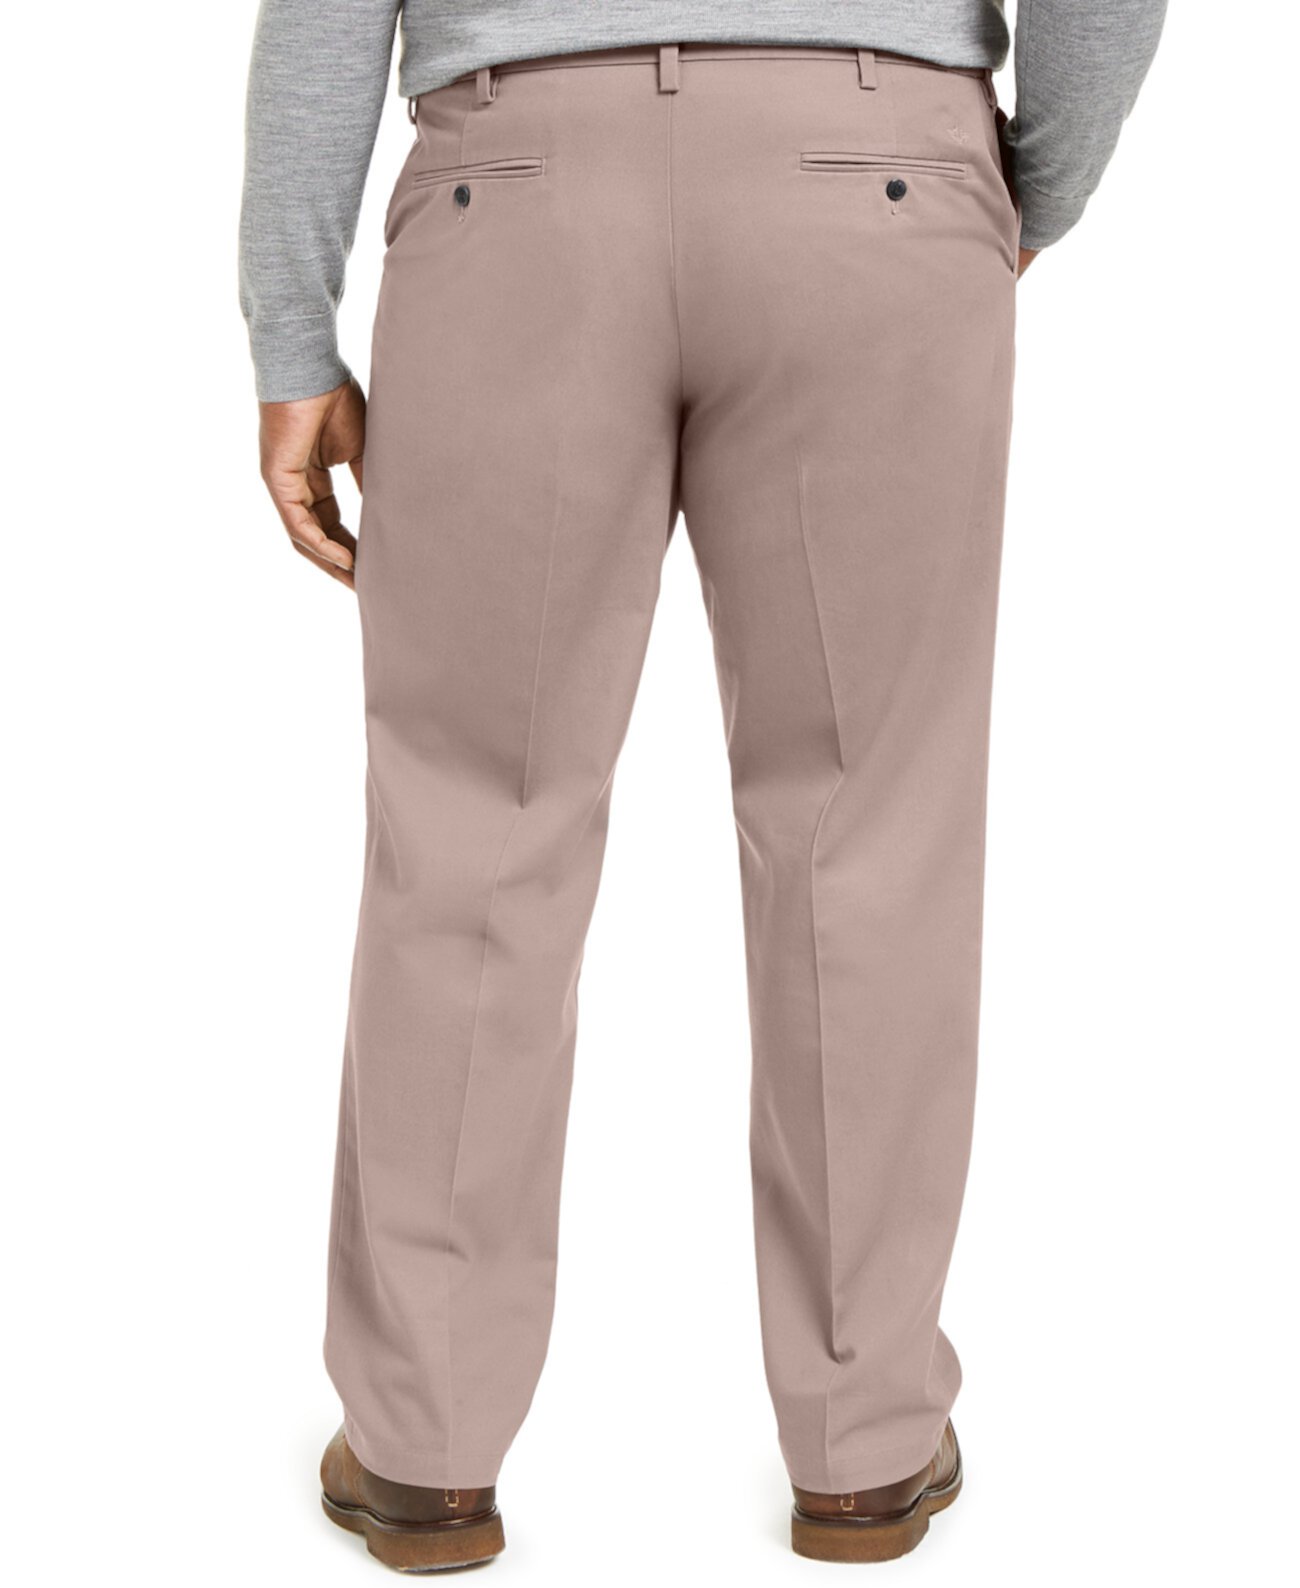 Мужские большие и высокие подписи Lux Cotton Classic Fit Плиссированные эластичные брюки цвета хаки Dockers